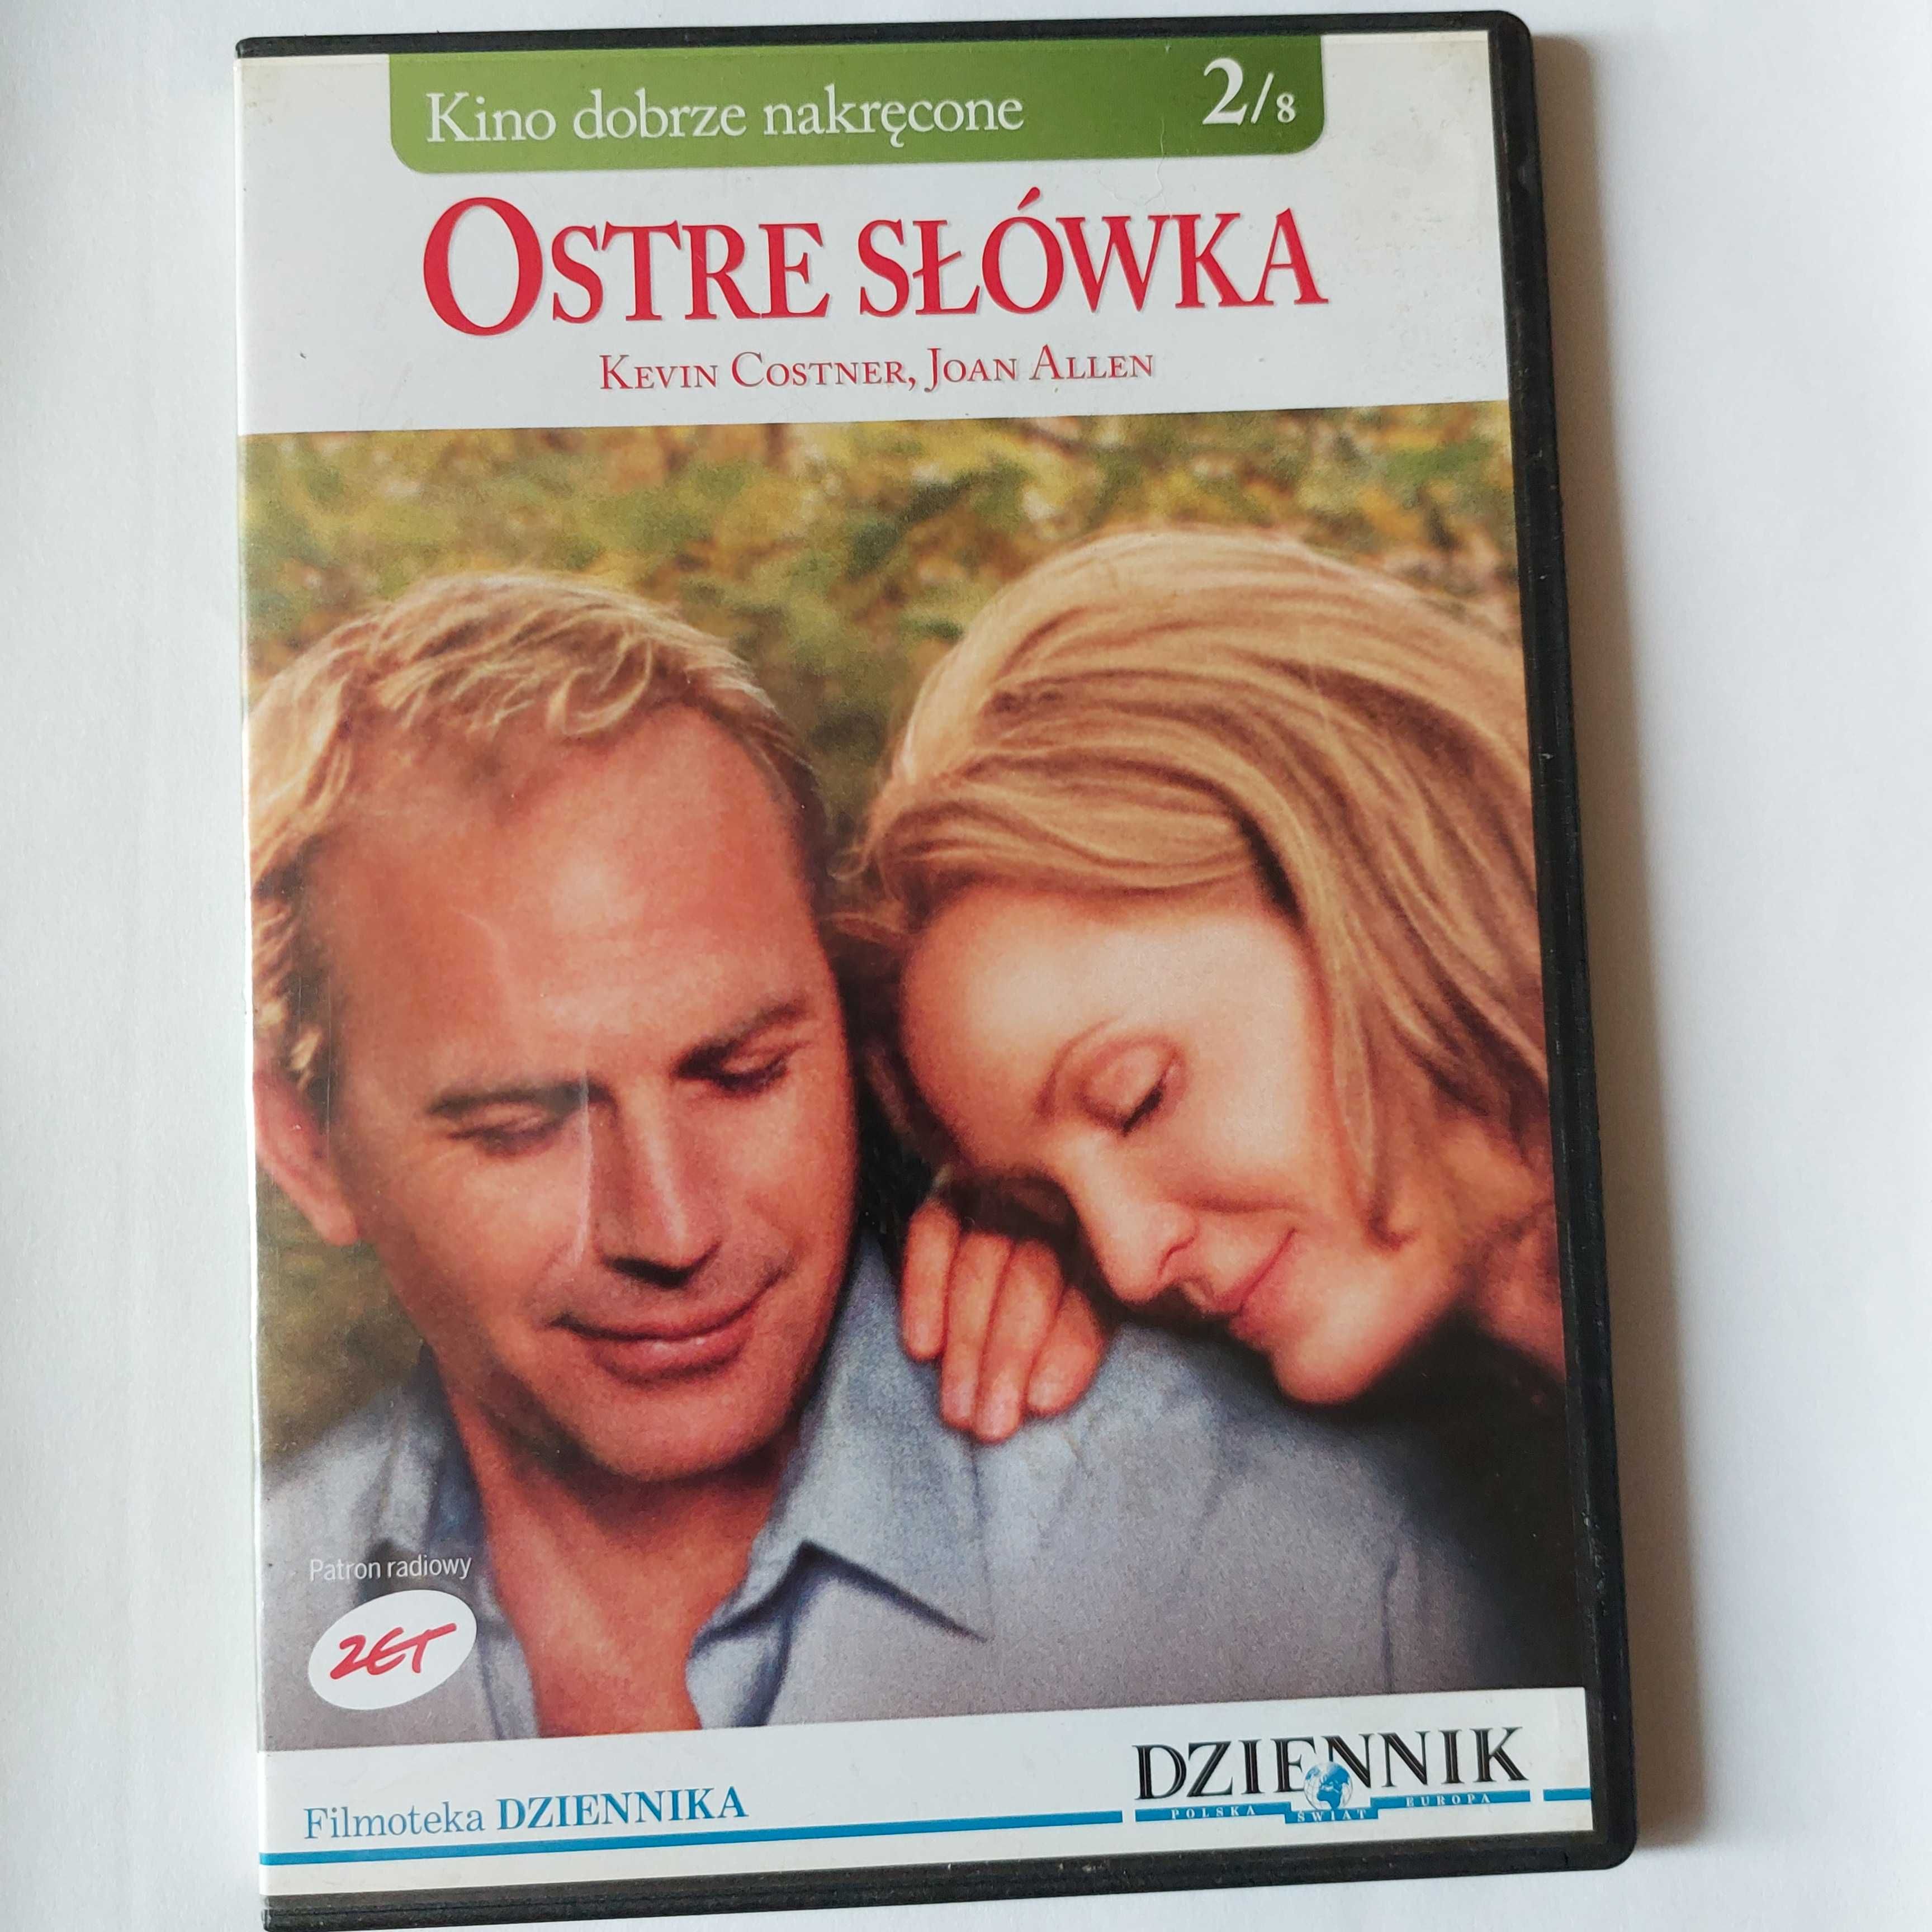 OSTRE SŁÓWKA | kino dobrze nakręcone | film po polsku na DVD